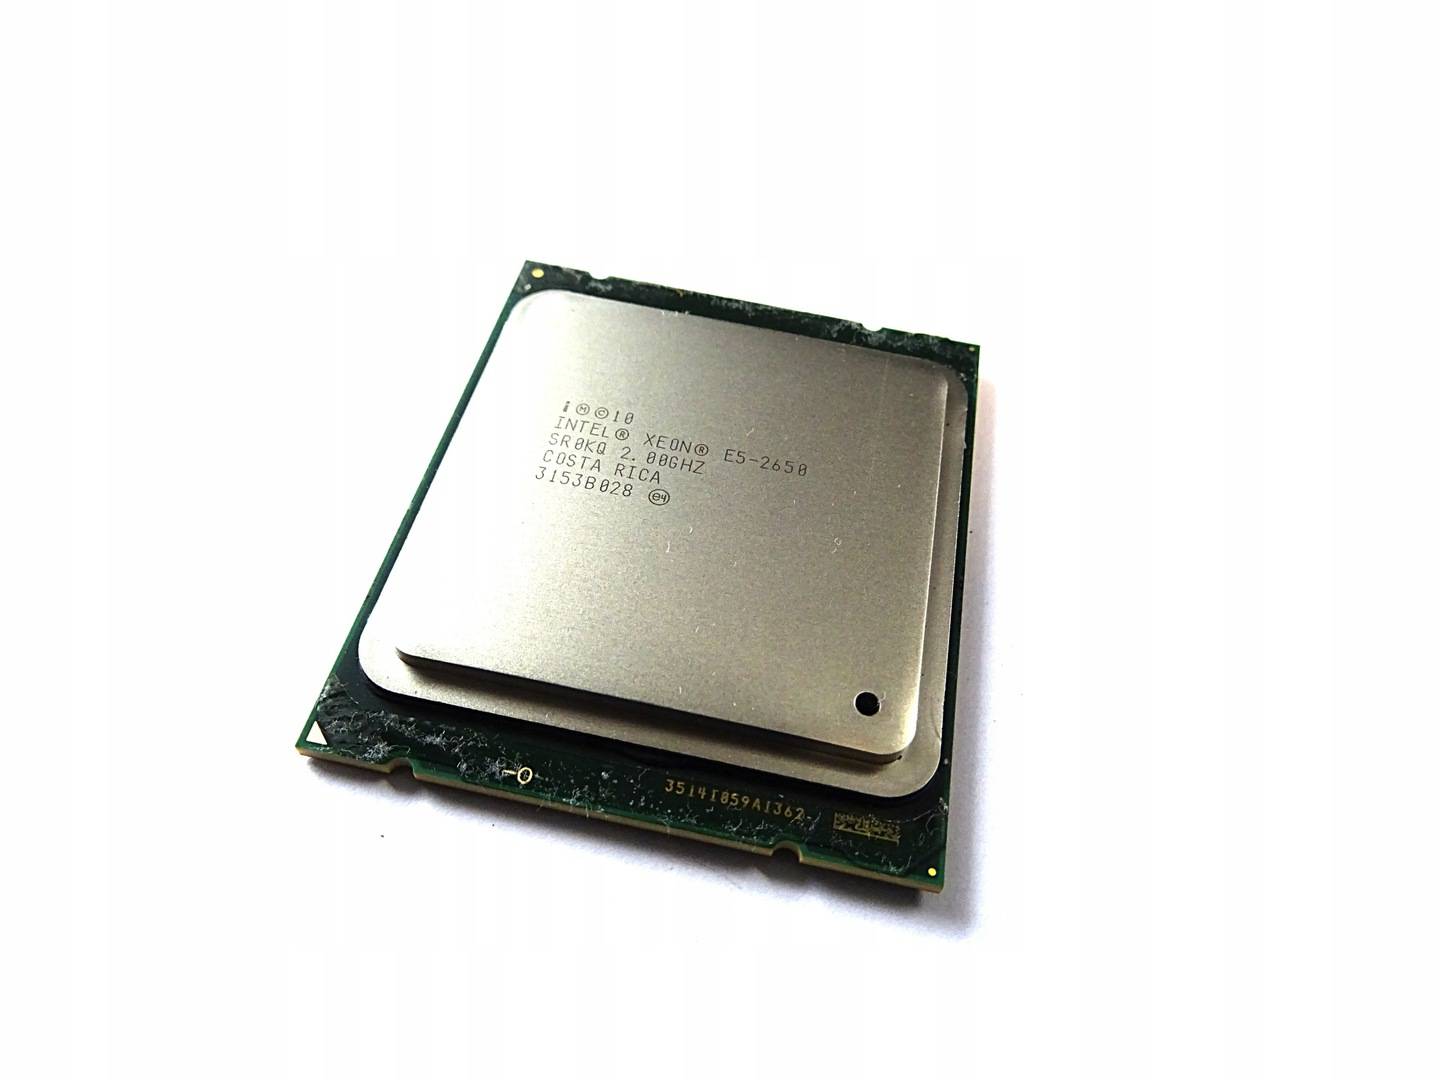 Интел е5 2650. Xeon e5 2650. Intel Xeon e5-2650. Интел Зеон е5 2650. Intel Xeon e5 2650 v2.